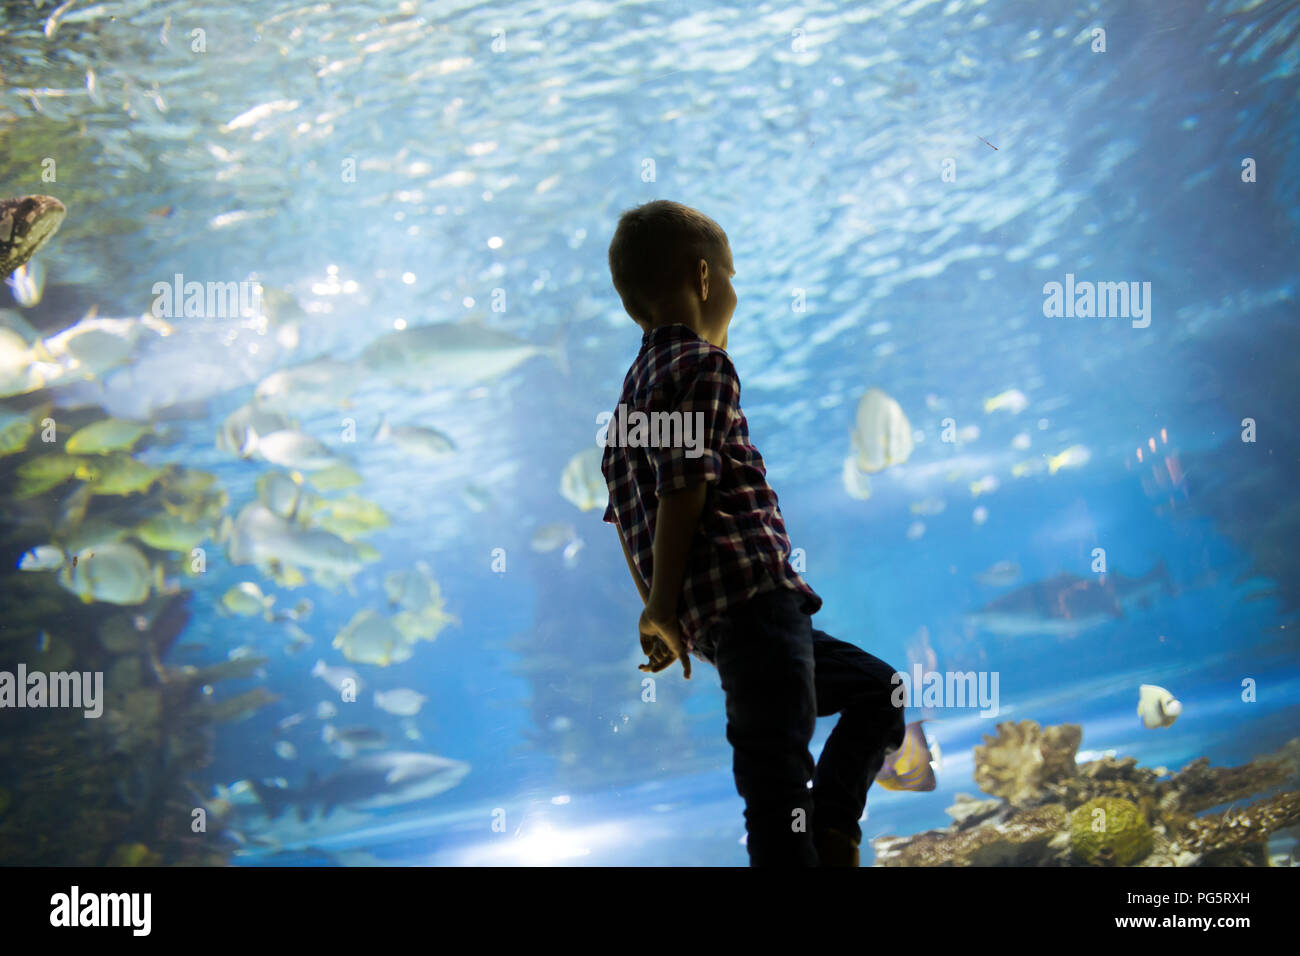 Ragazzo serio cerca in acquario con pesci tropicali Foto Stock